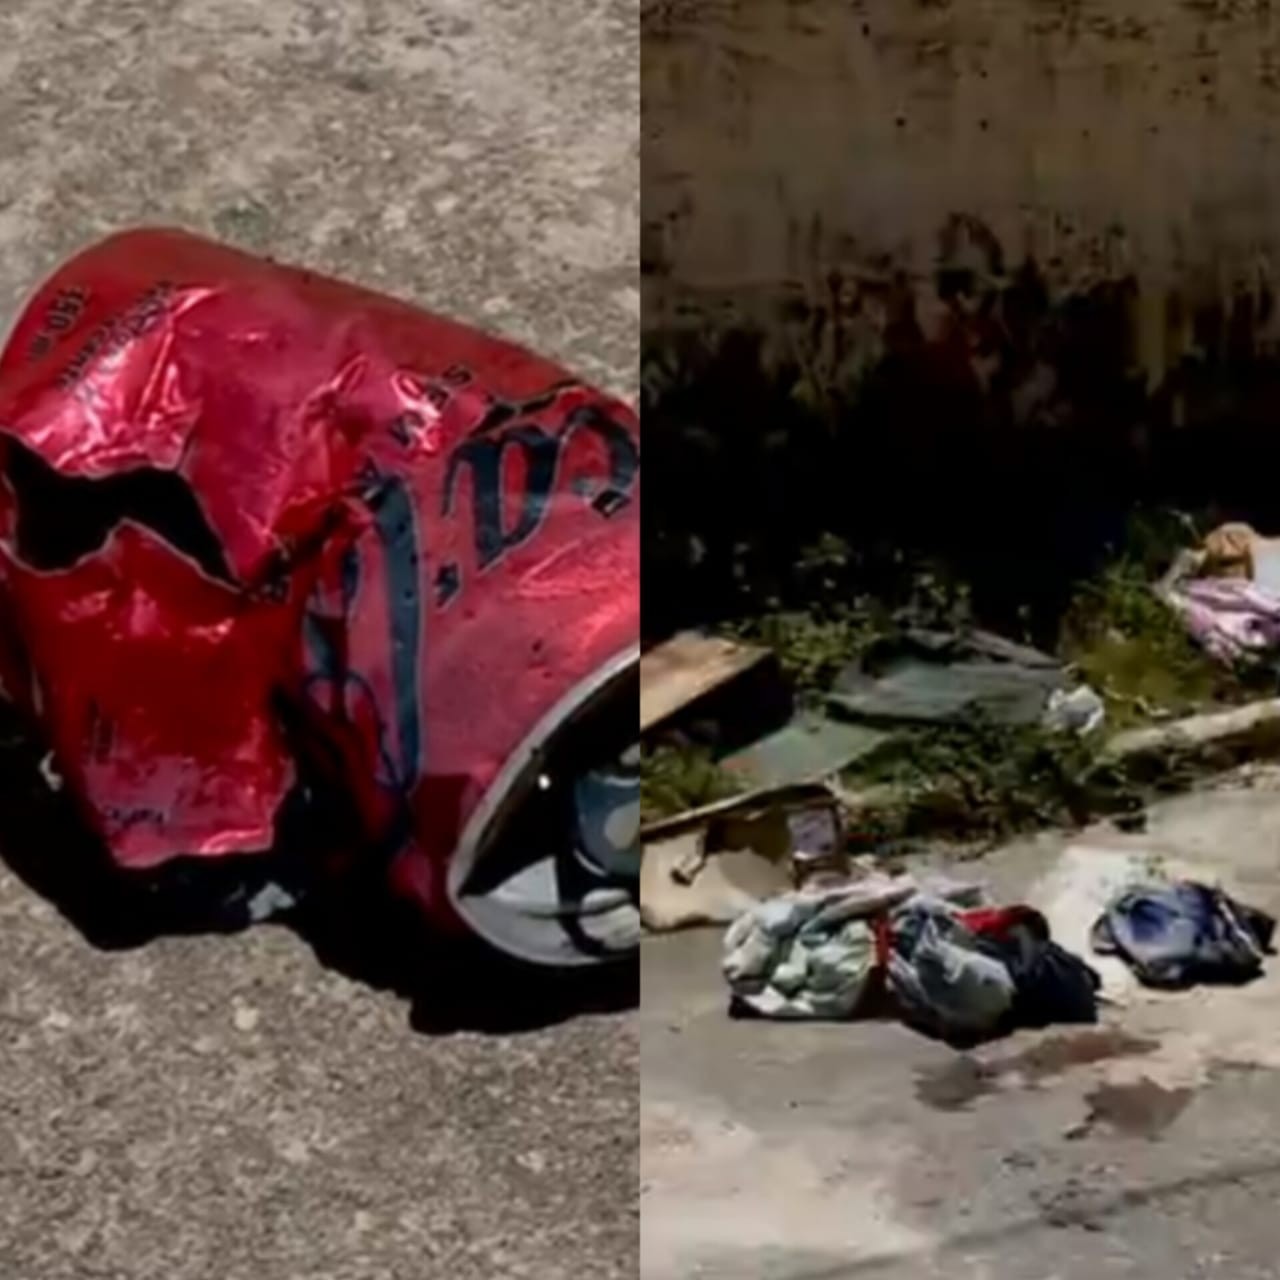 Bombas encontradas em Maceió: o que se sabe e o que falta esclarecer